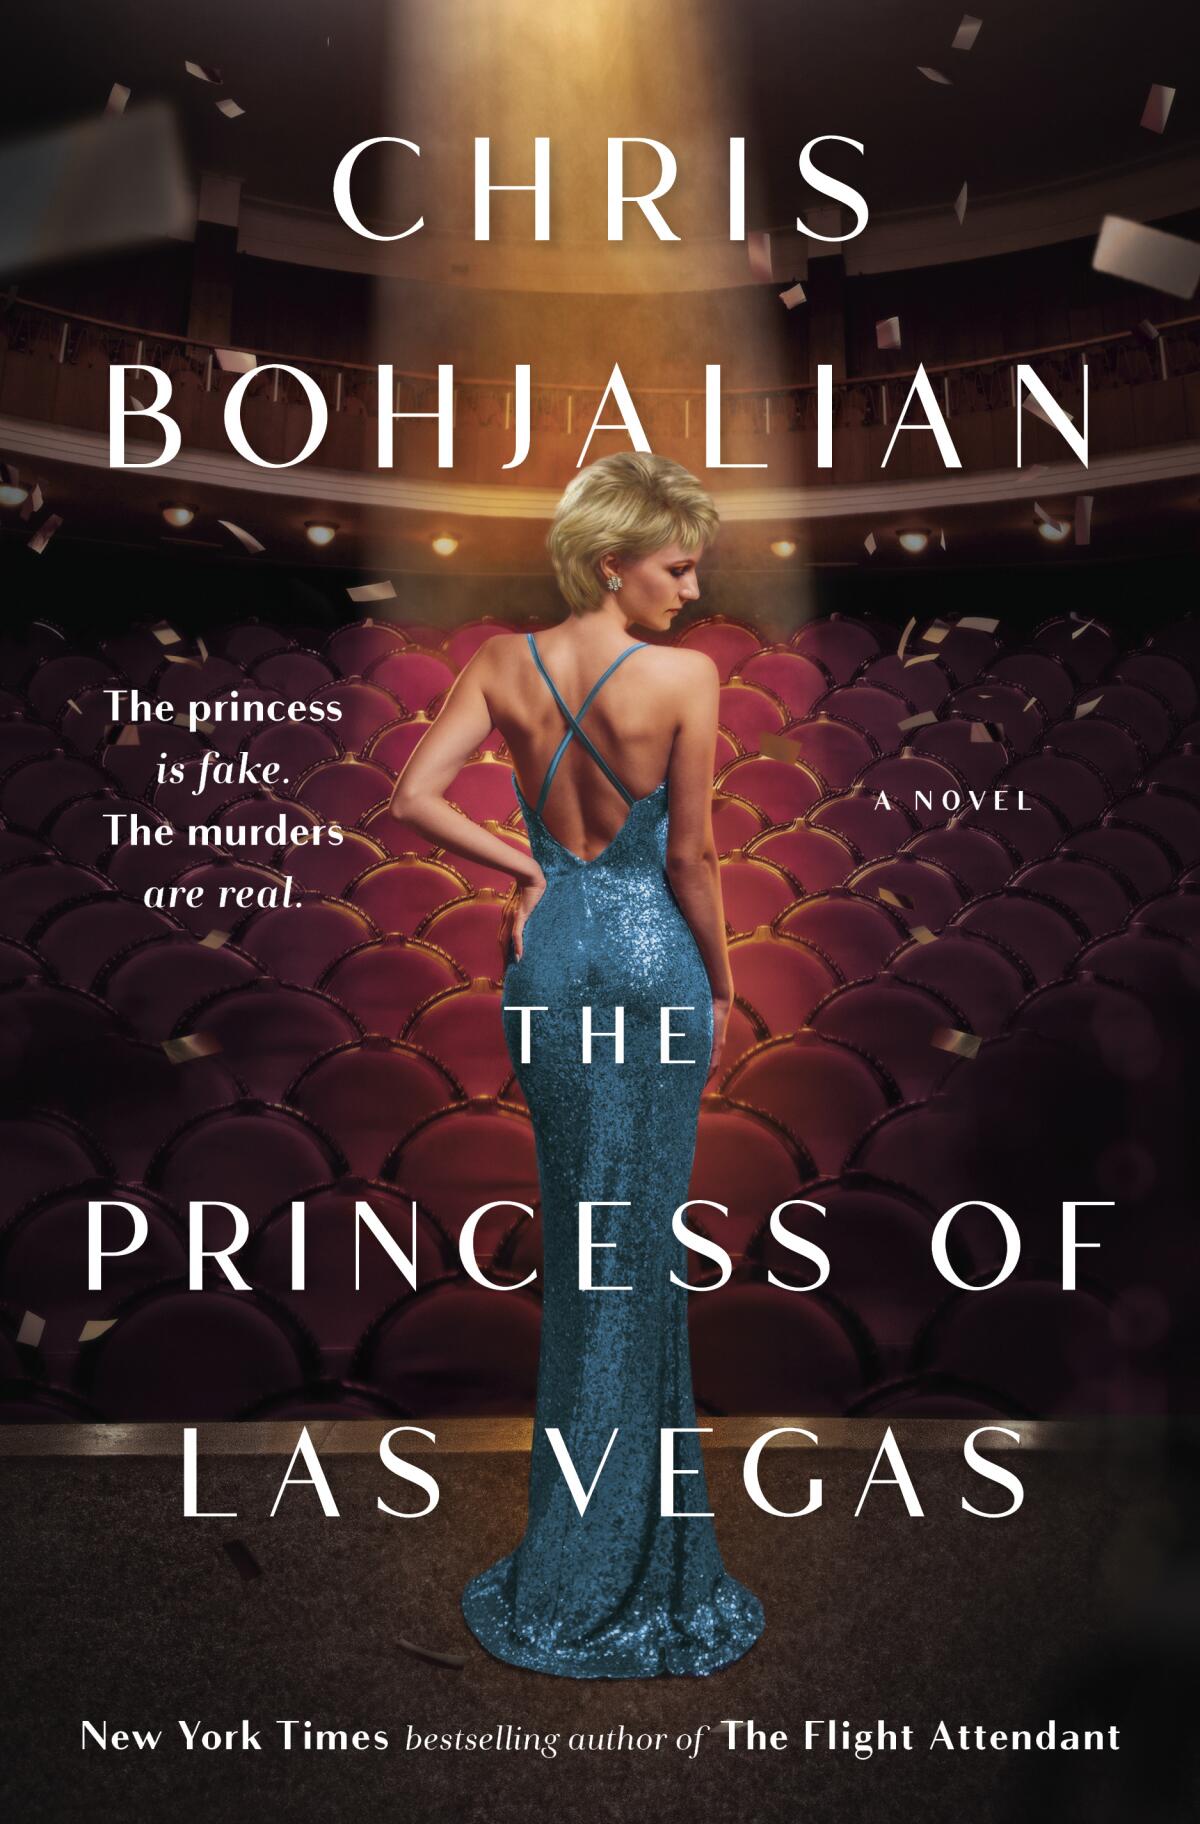 "The Princess of Las Vegas" by Chris Bohjalian